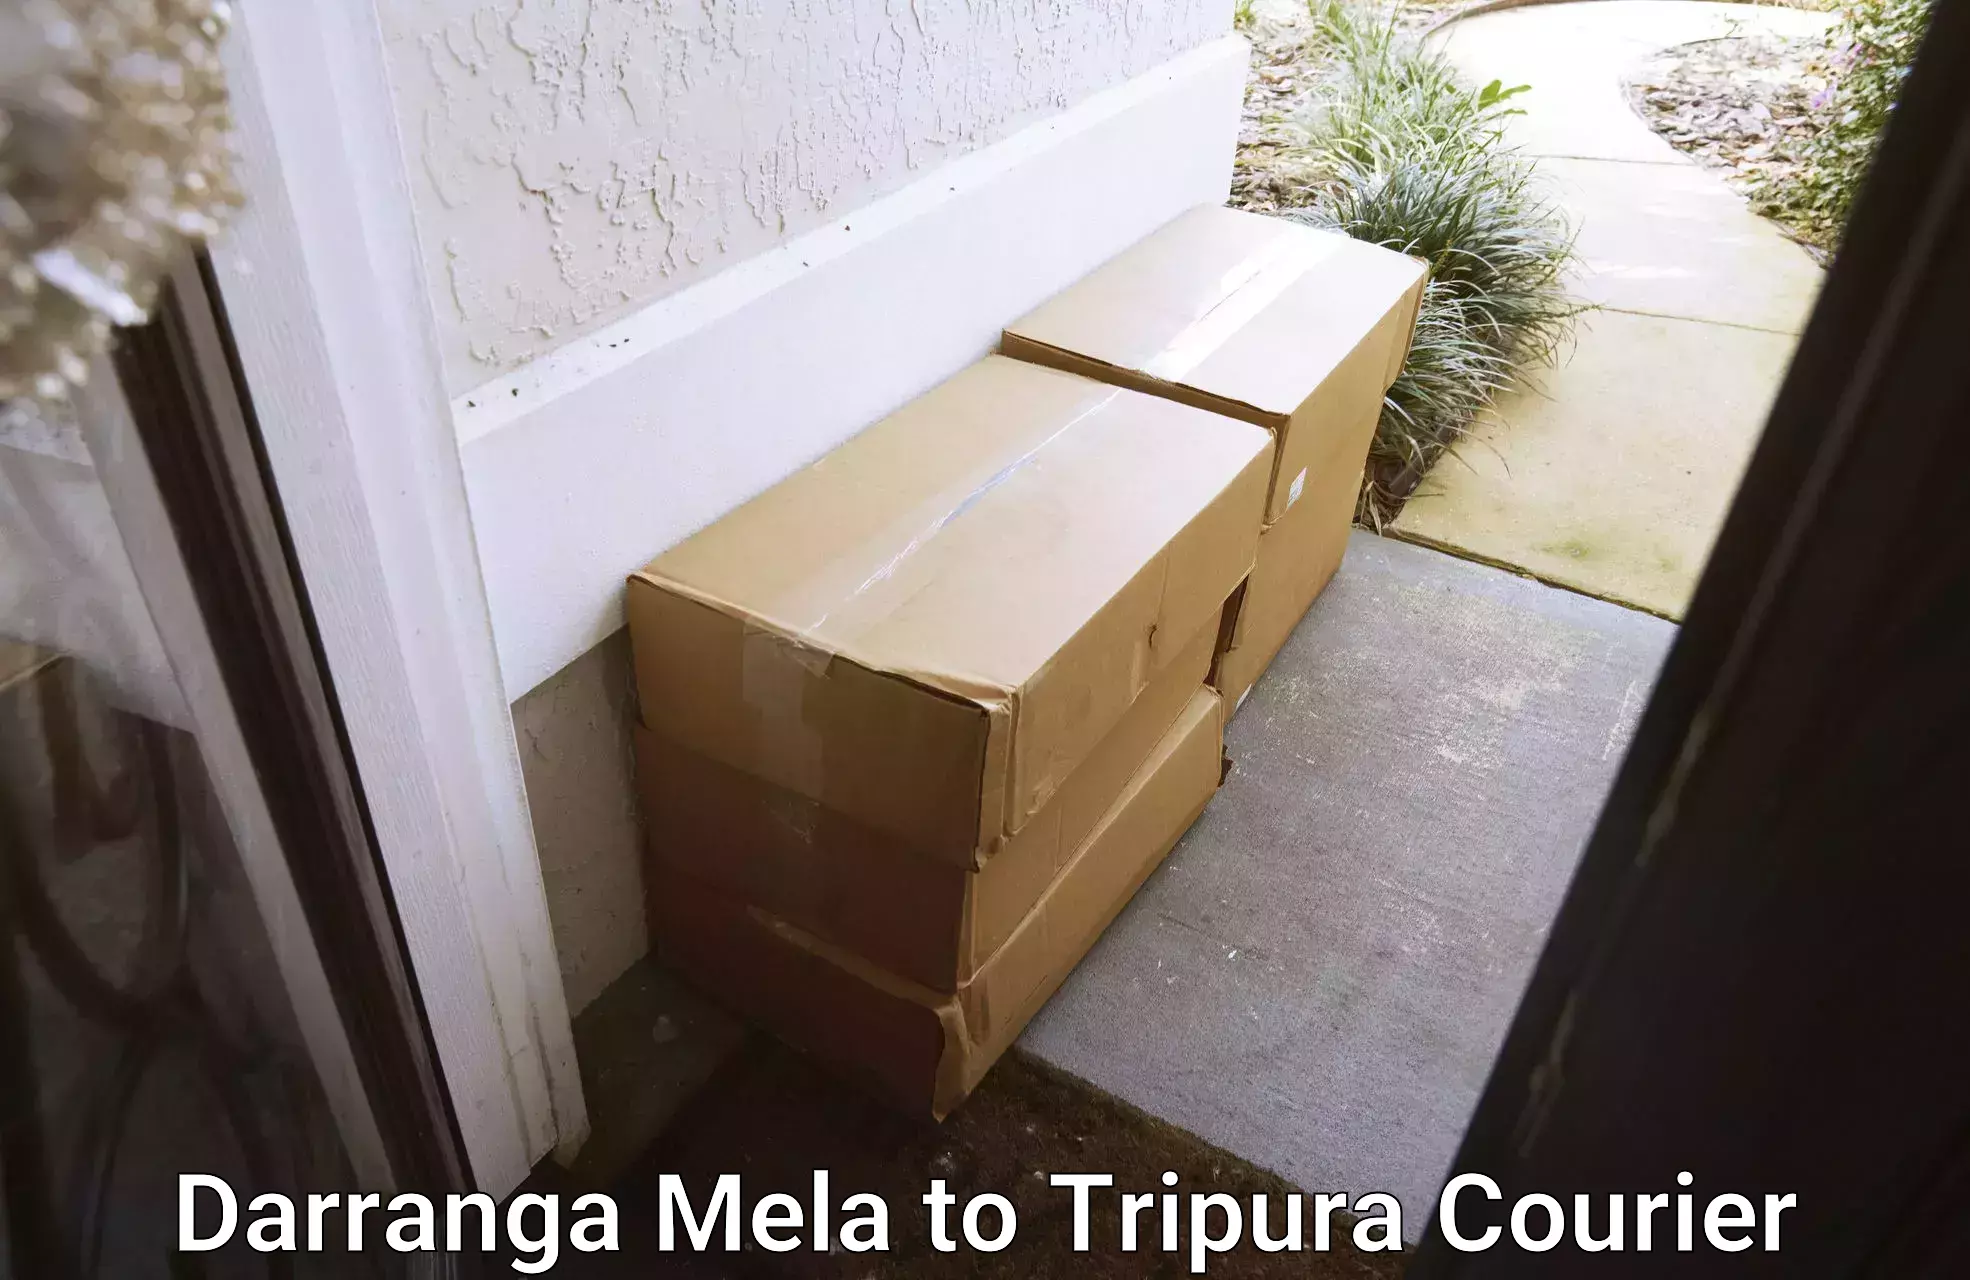 High-capacity parcel service Darranga Mela to Manughat